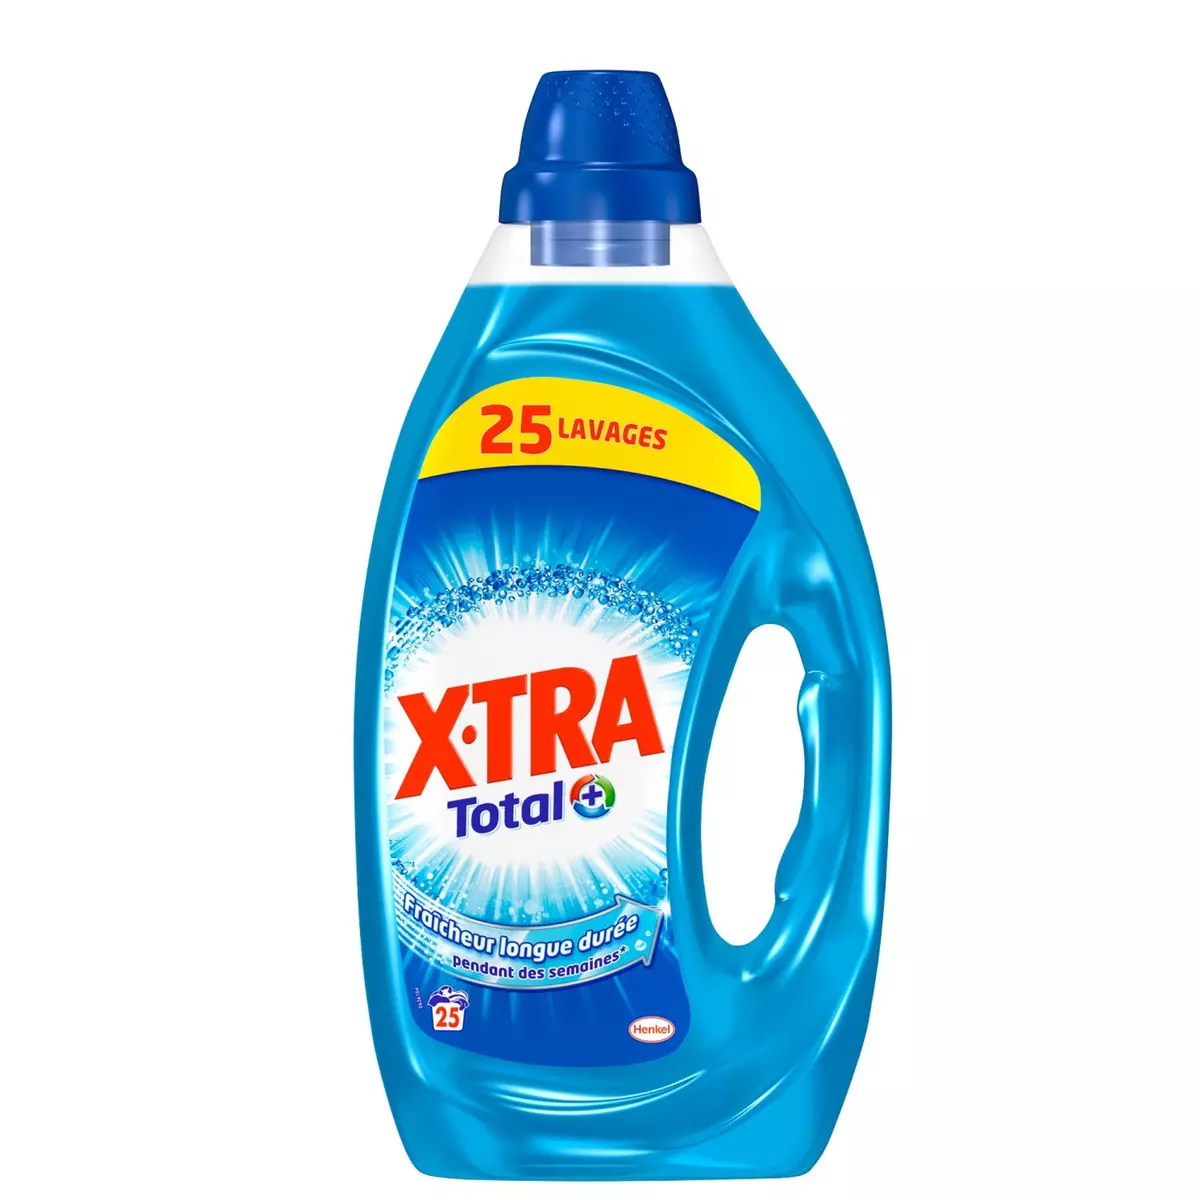 X-TRA Total plus lessive liquide fraîcheur 25 lavages 1,25l